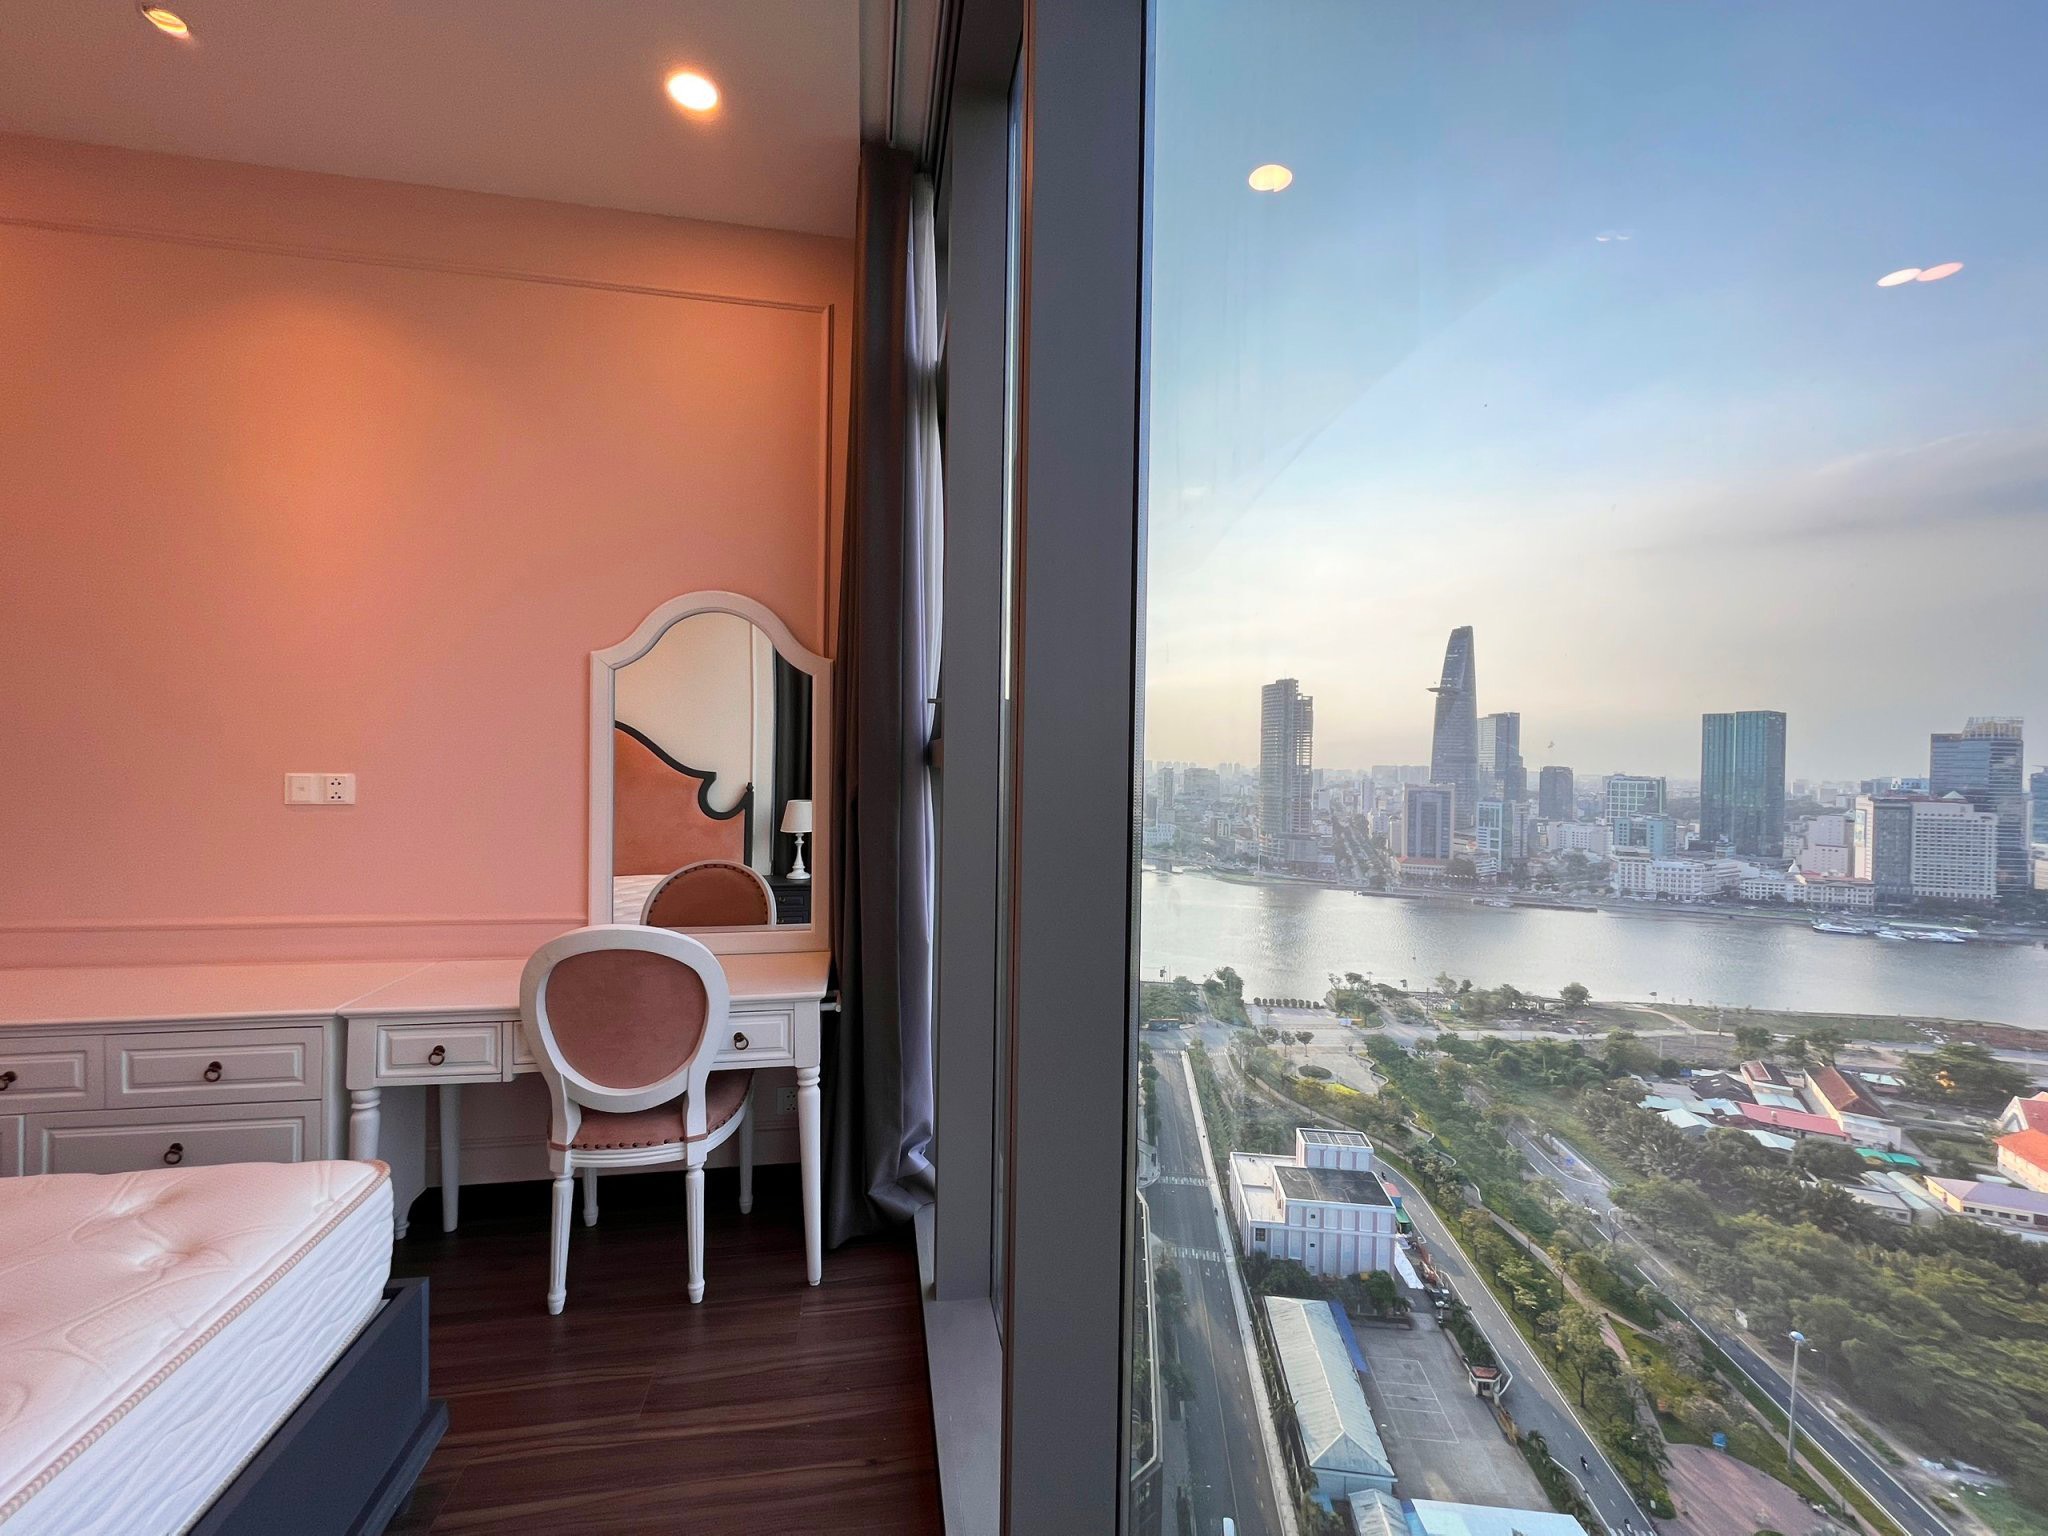 Cho thuê căn hộ hạng sang EMPIRE City Thủ Thiêm-2PN-giá 30tr, View sông SG mát mẻ trong lành - Ảnh 3